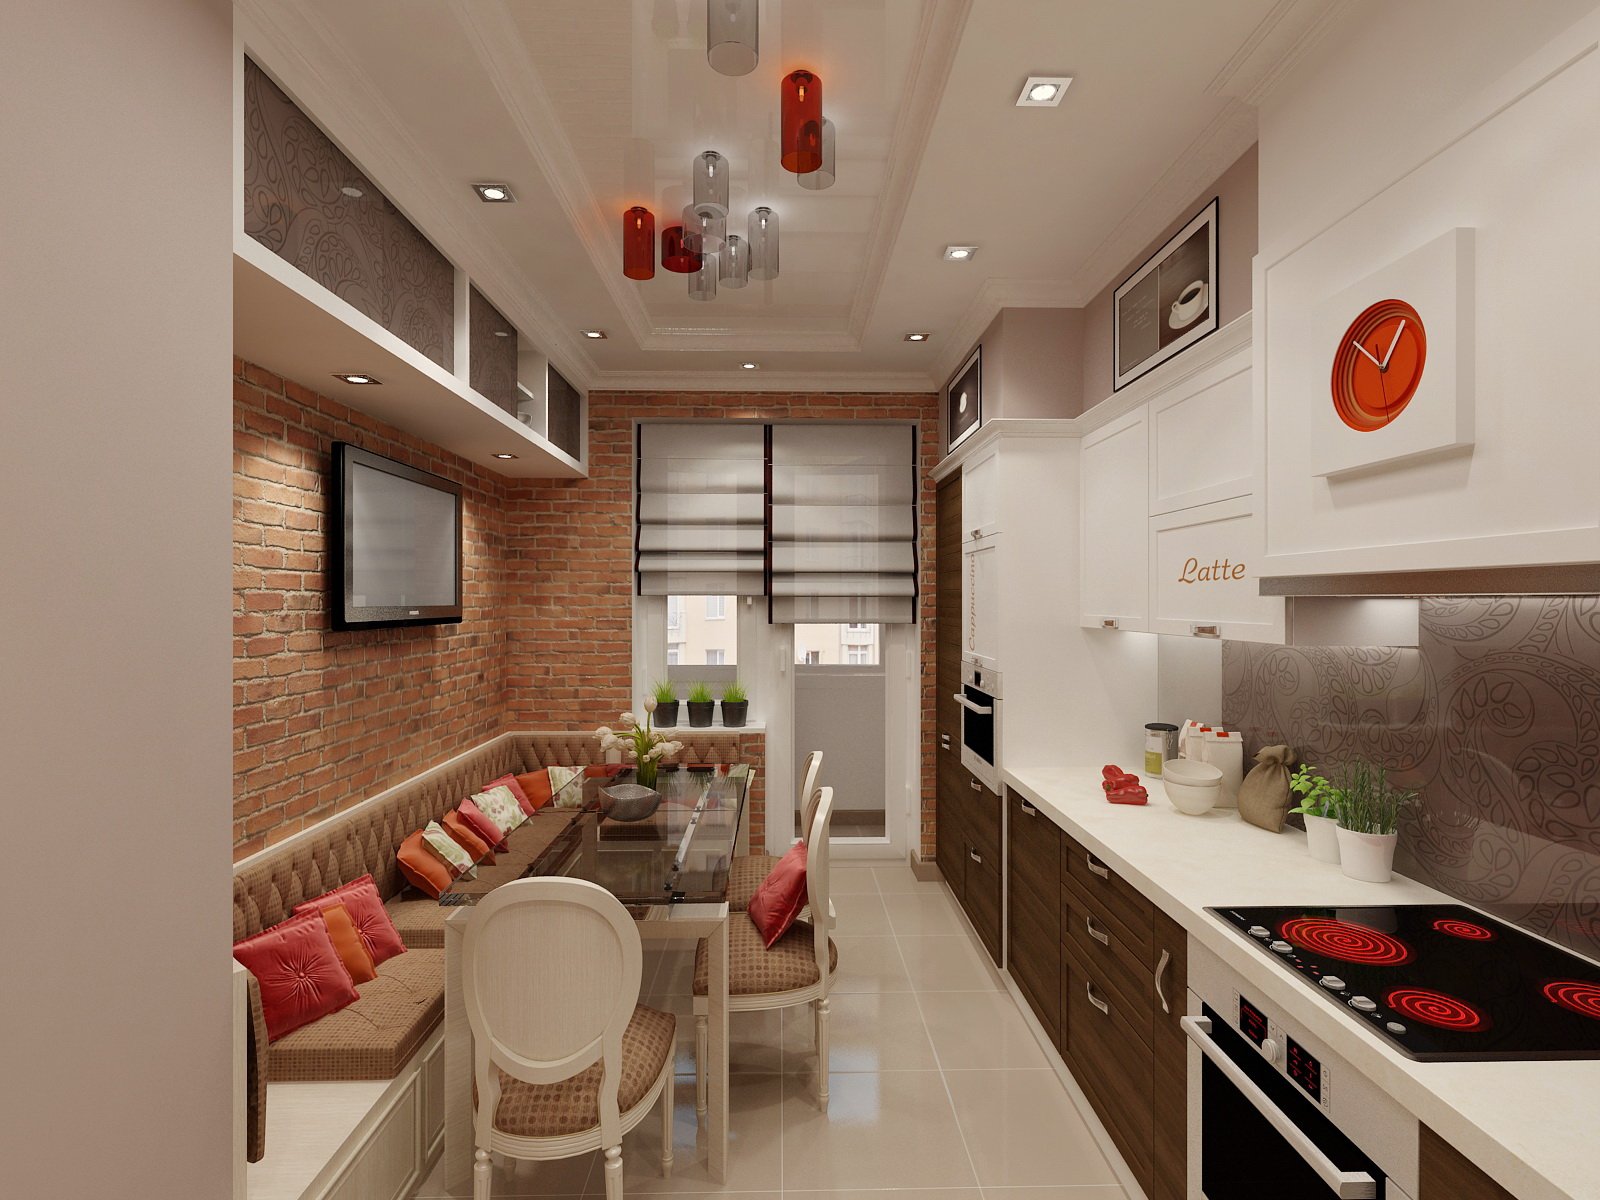 Дизайн кухни 3 на 3 кв м:выбор планировки и оформление интерьера
дизайн кухни 3 на 3 кв м:выбор планировки и оформление интерьера